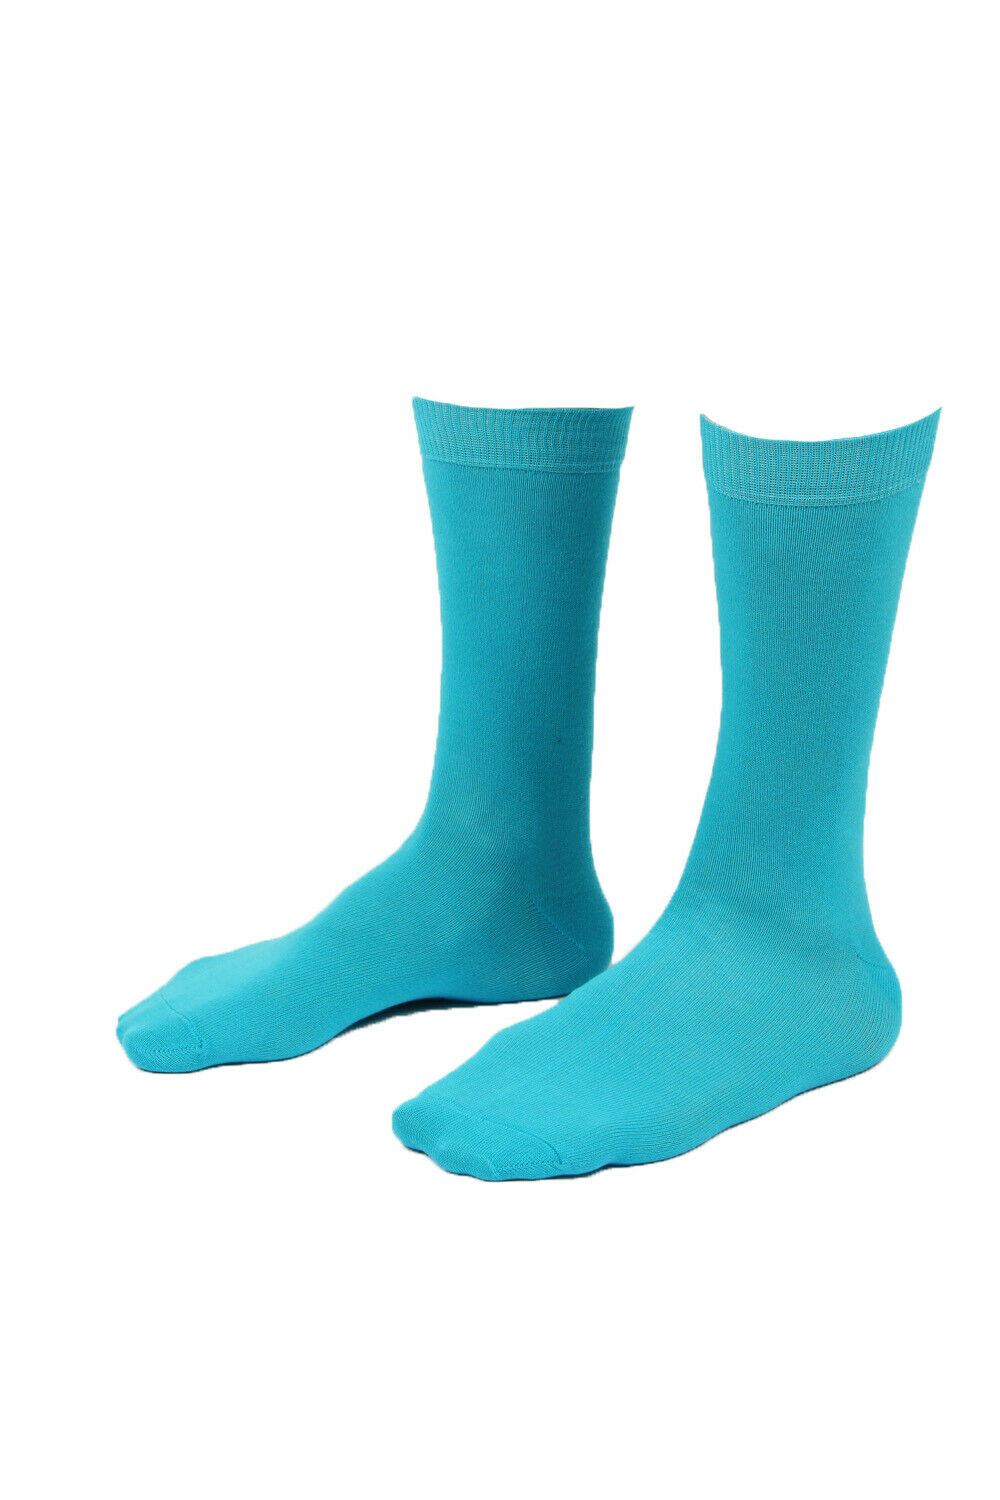 Mens Cotton Rich Plain Design Ankle Socks One Size 6-11 